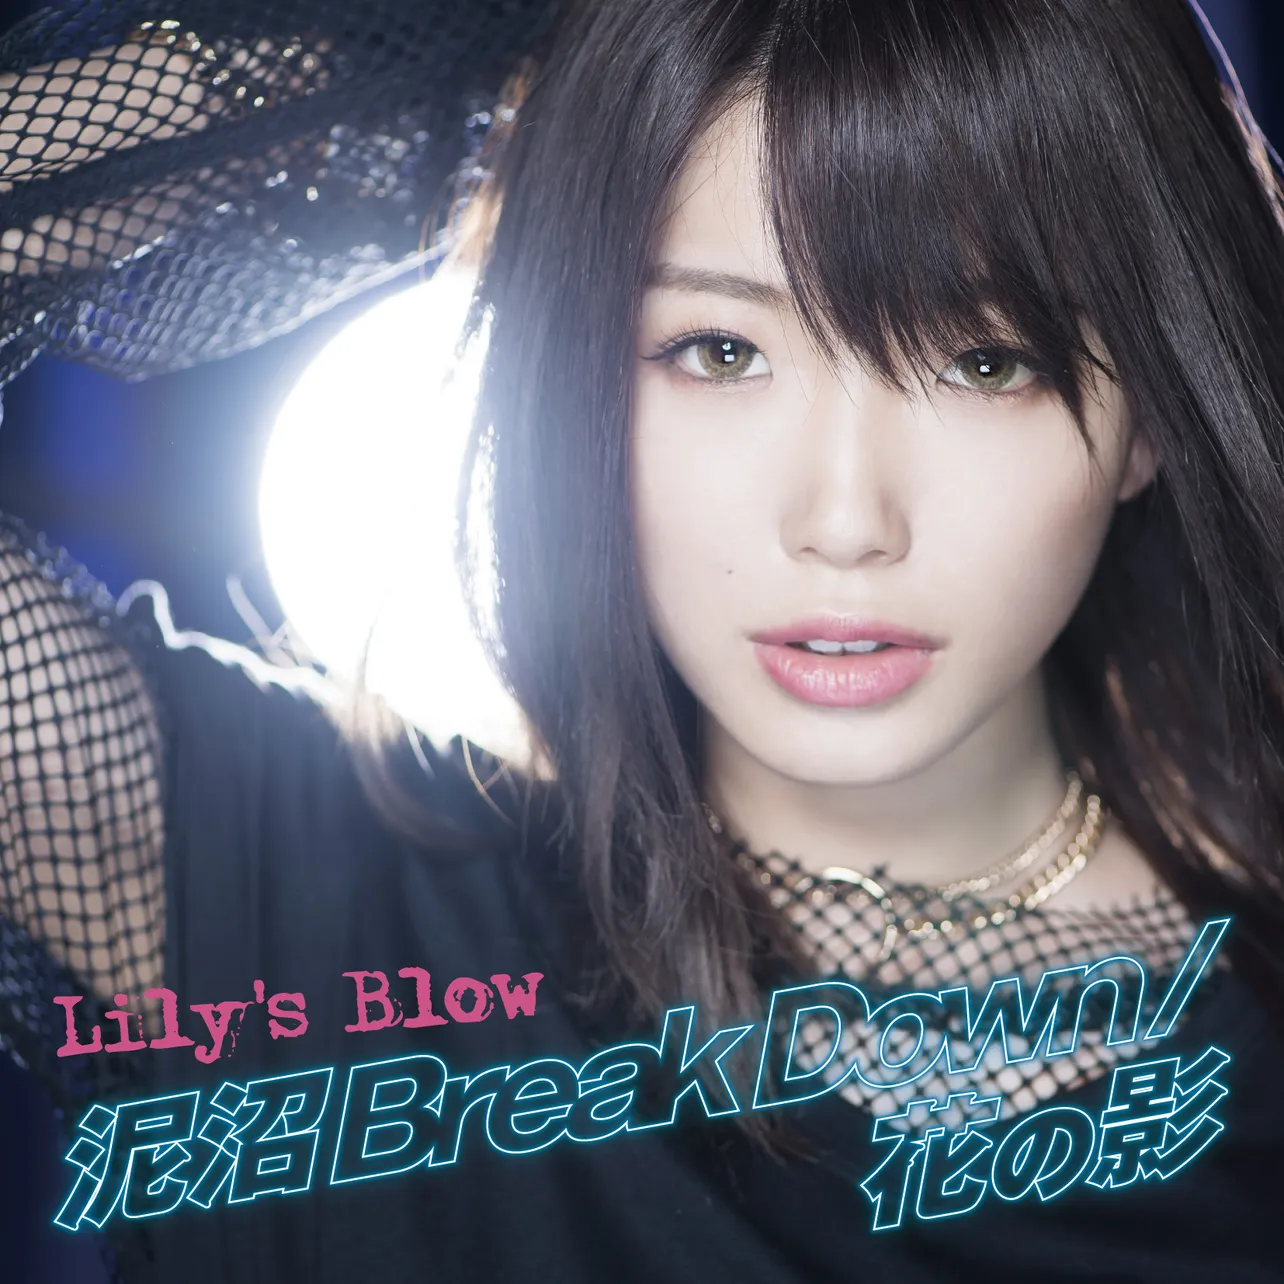 「泥沼 Break Down」は「真夜中のみつばち少女」(TOKYO MX)のオープニングテーマ